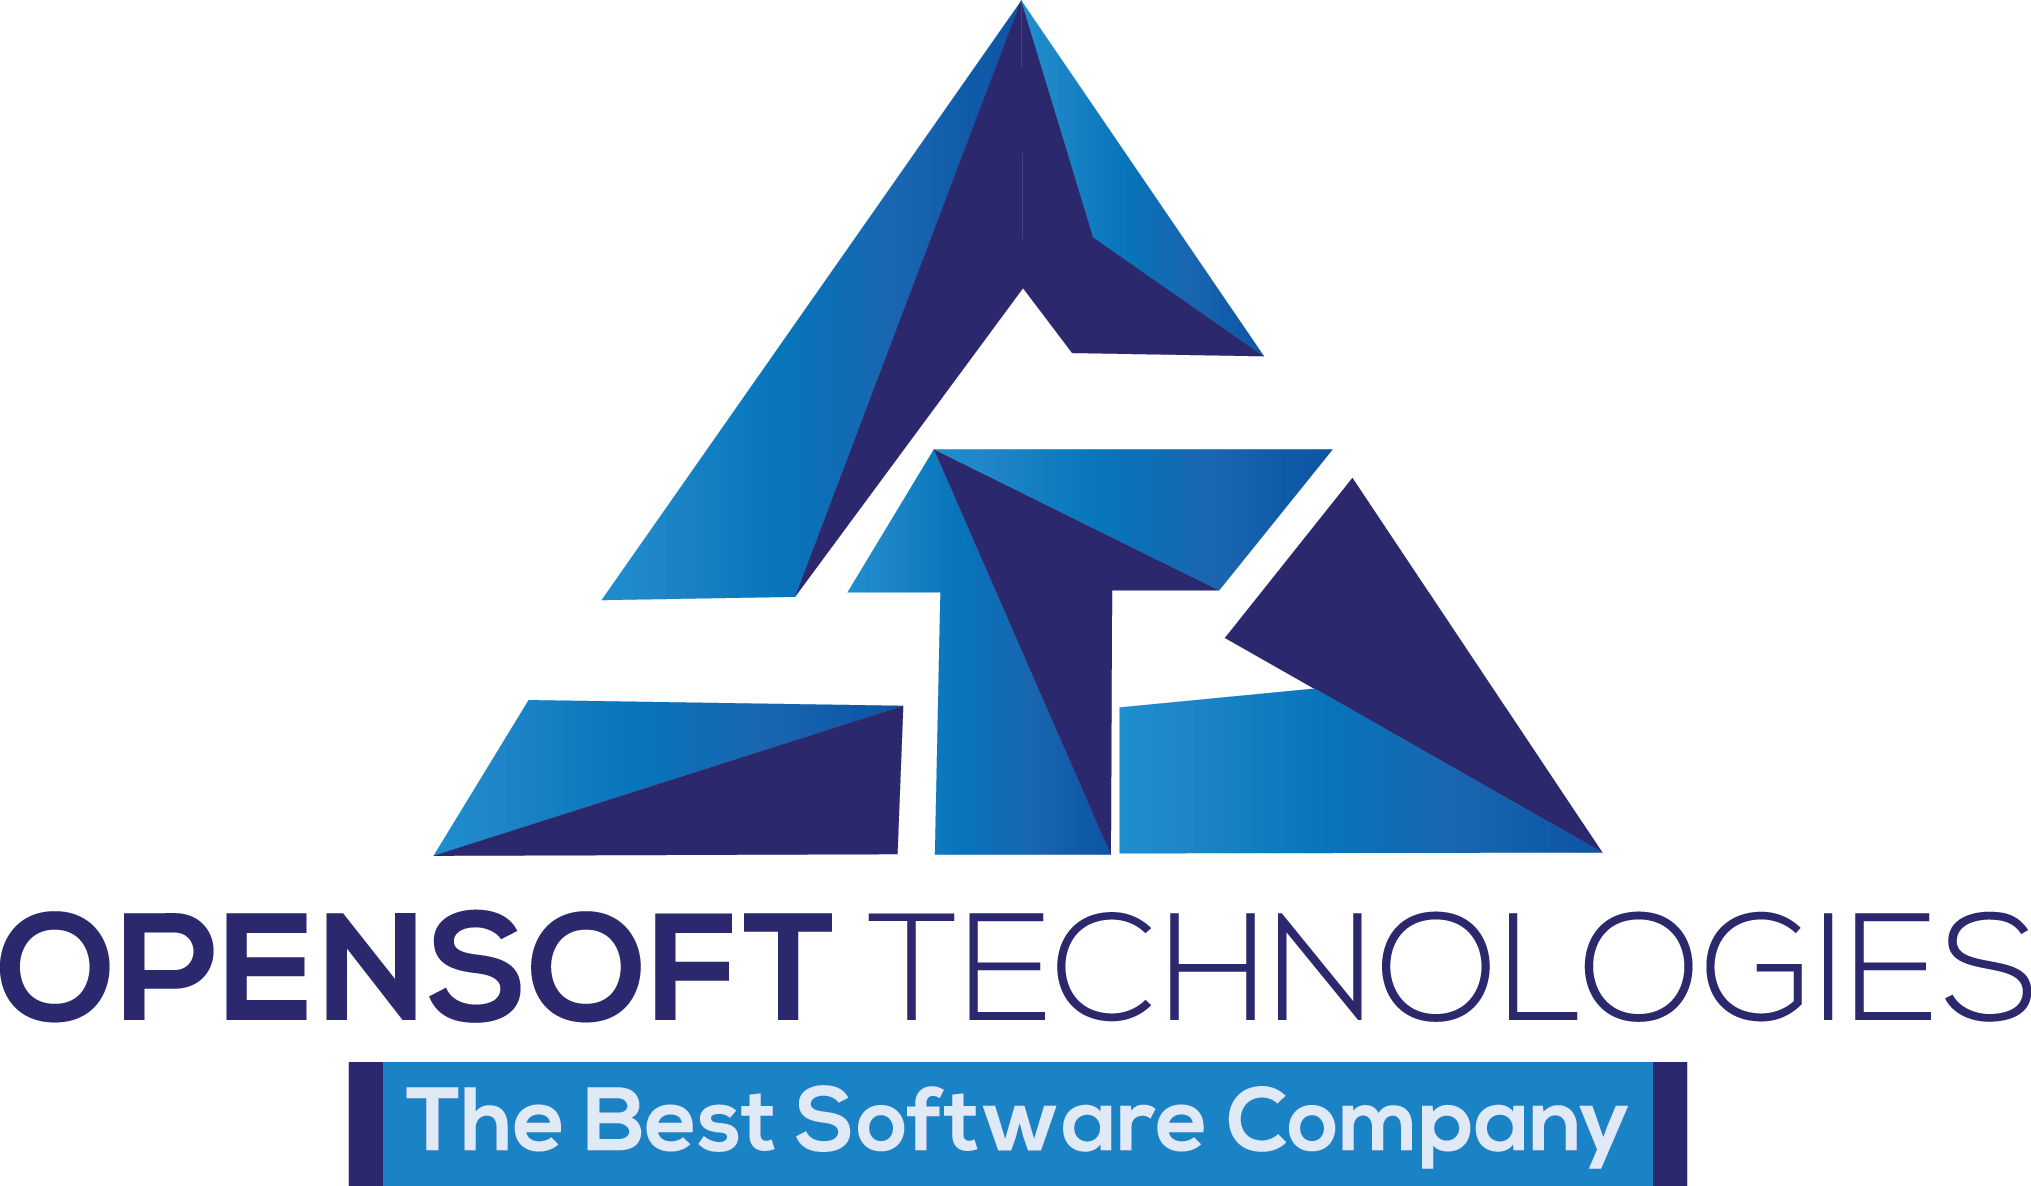 OpenSoft Technologies